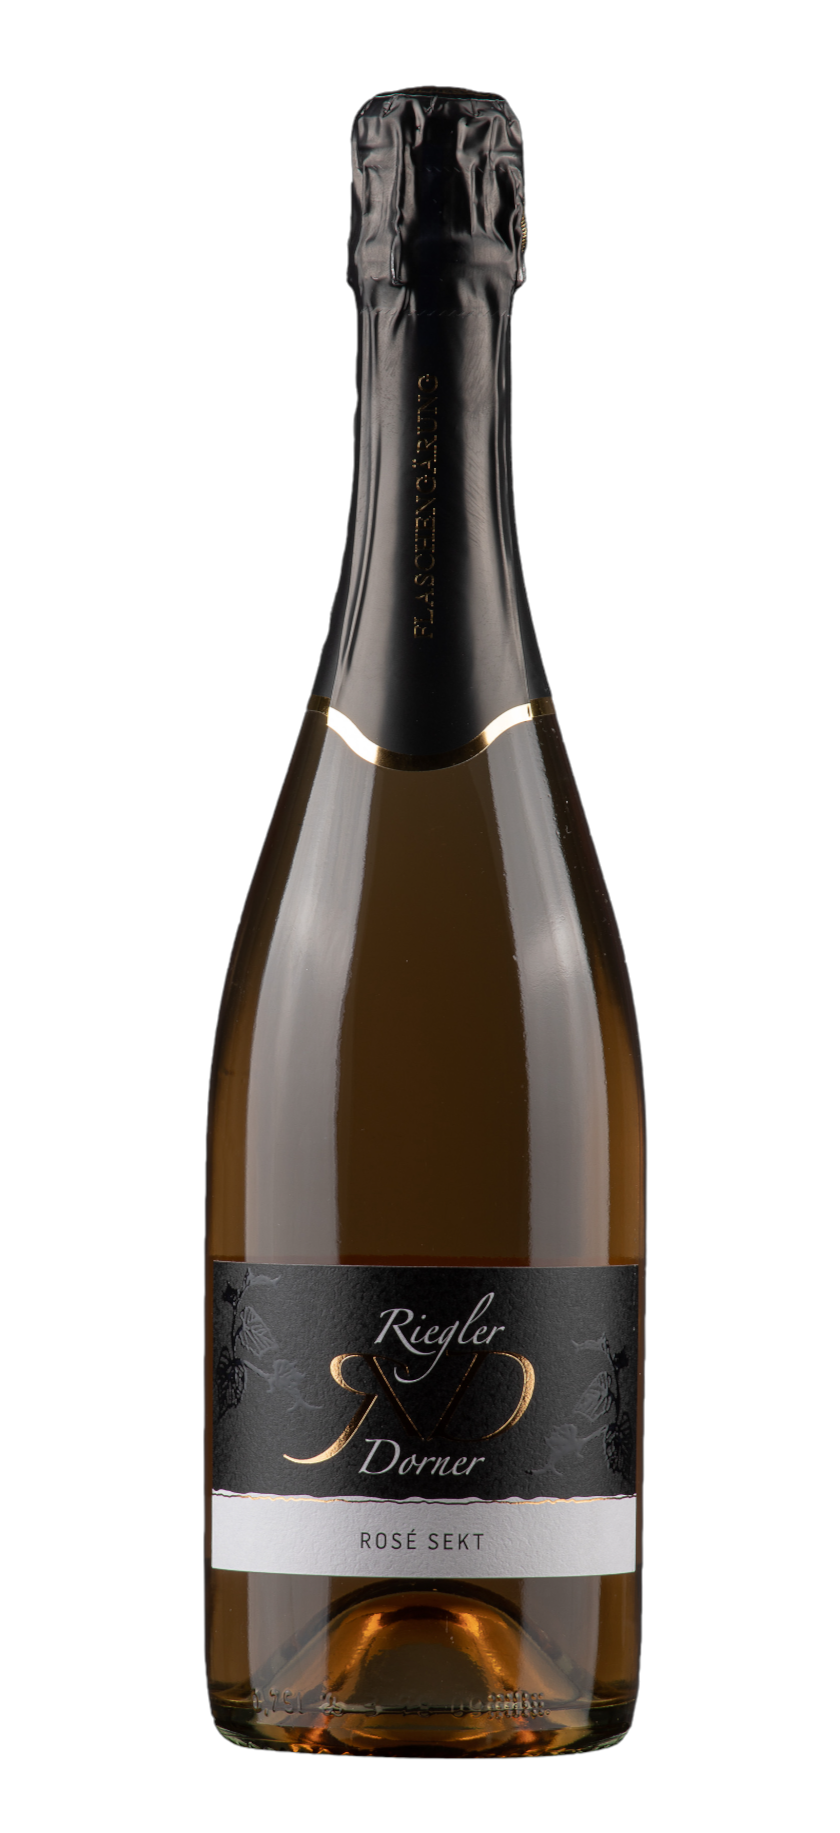 Weinbau Riegler-Dorner Produkt-Beispiele Rosé Sekt